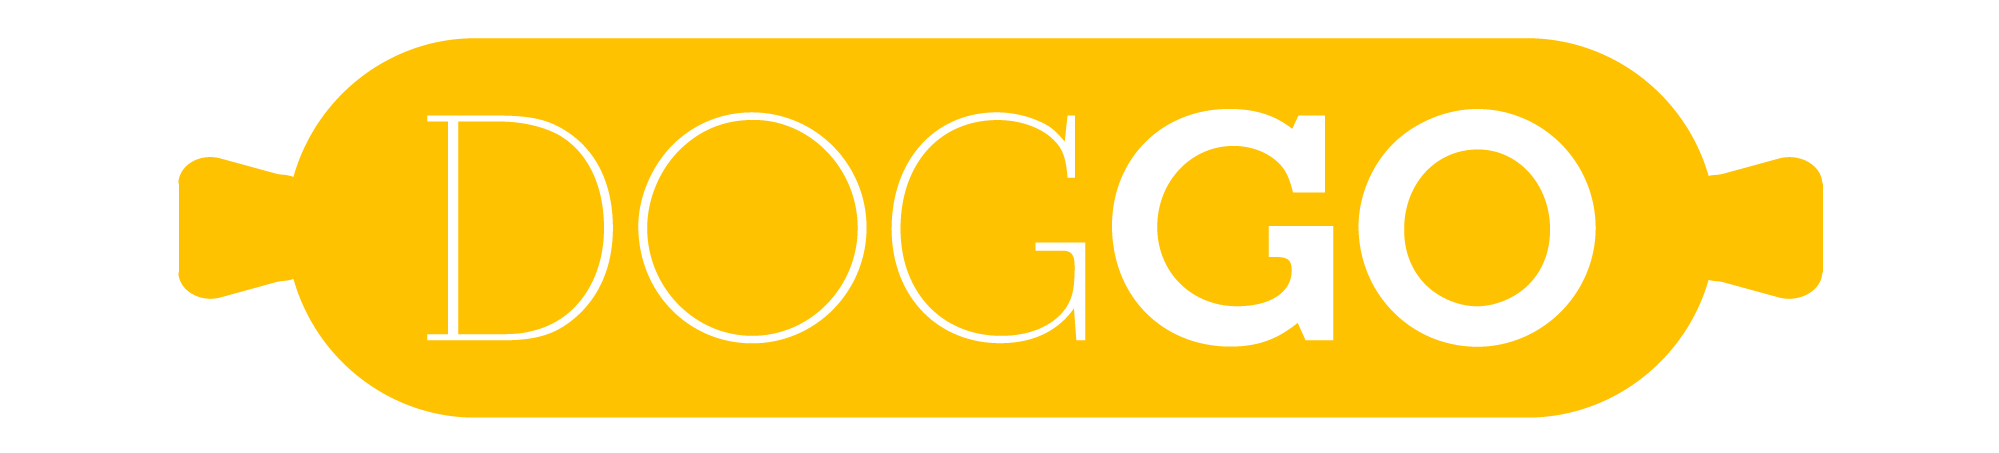 DogGo Logo